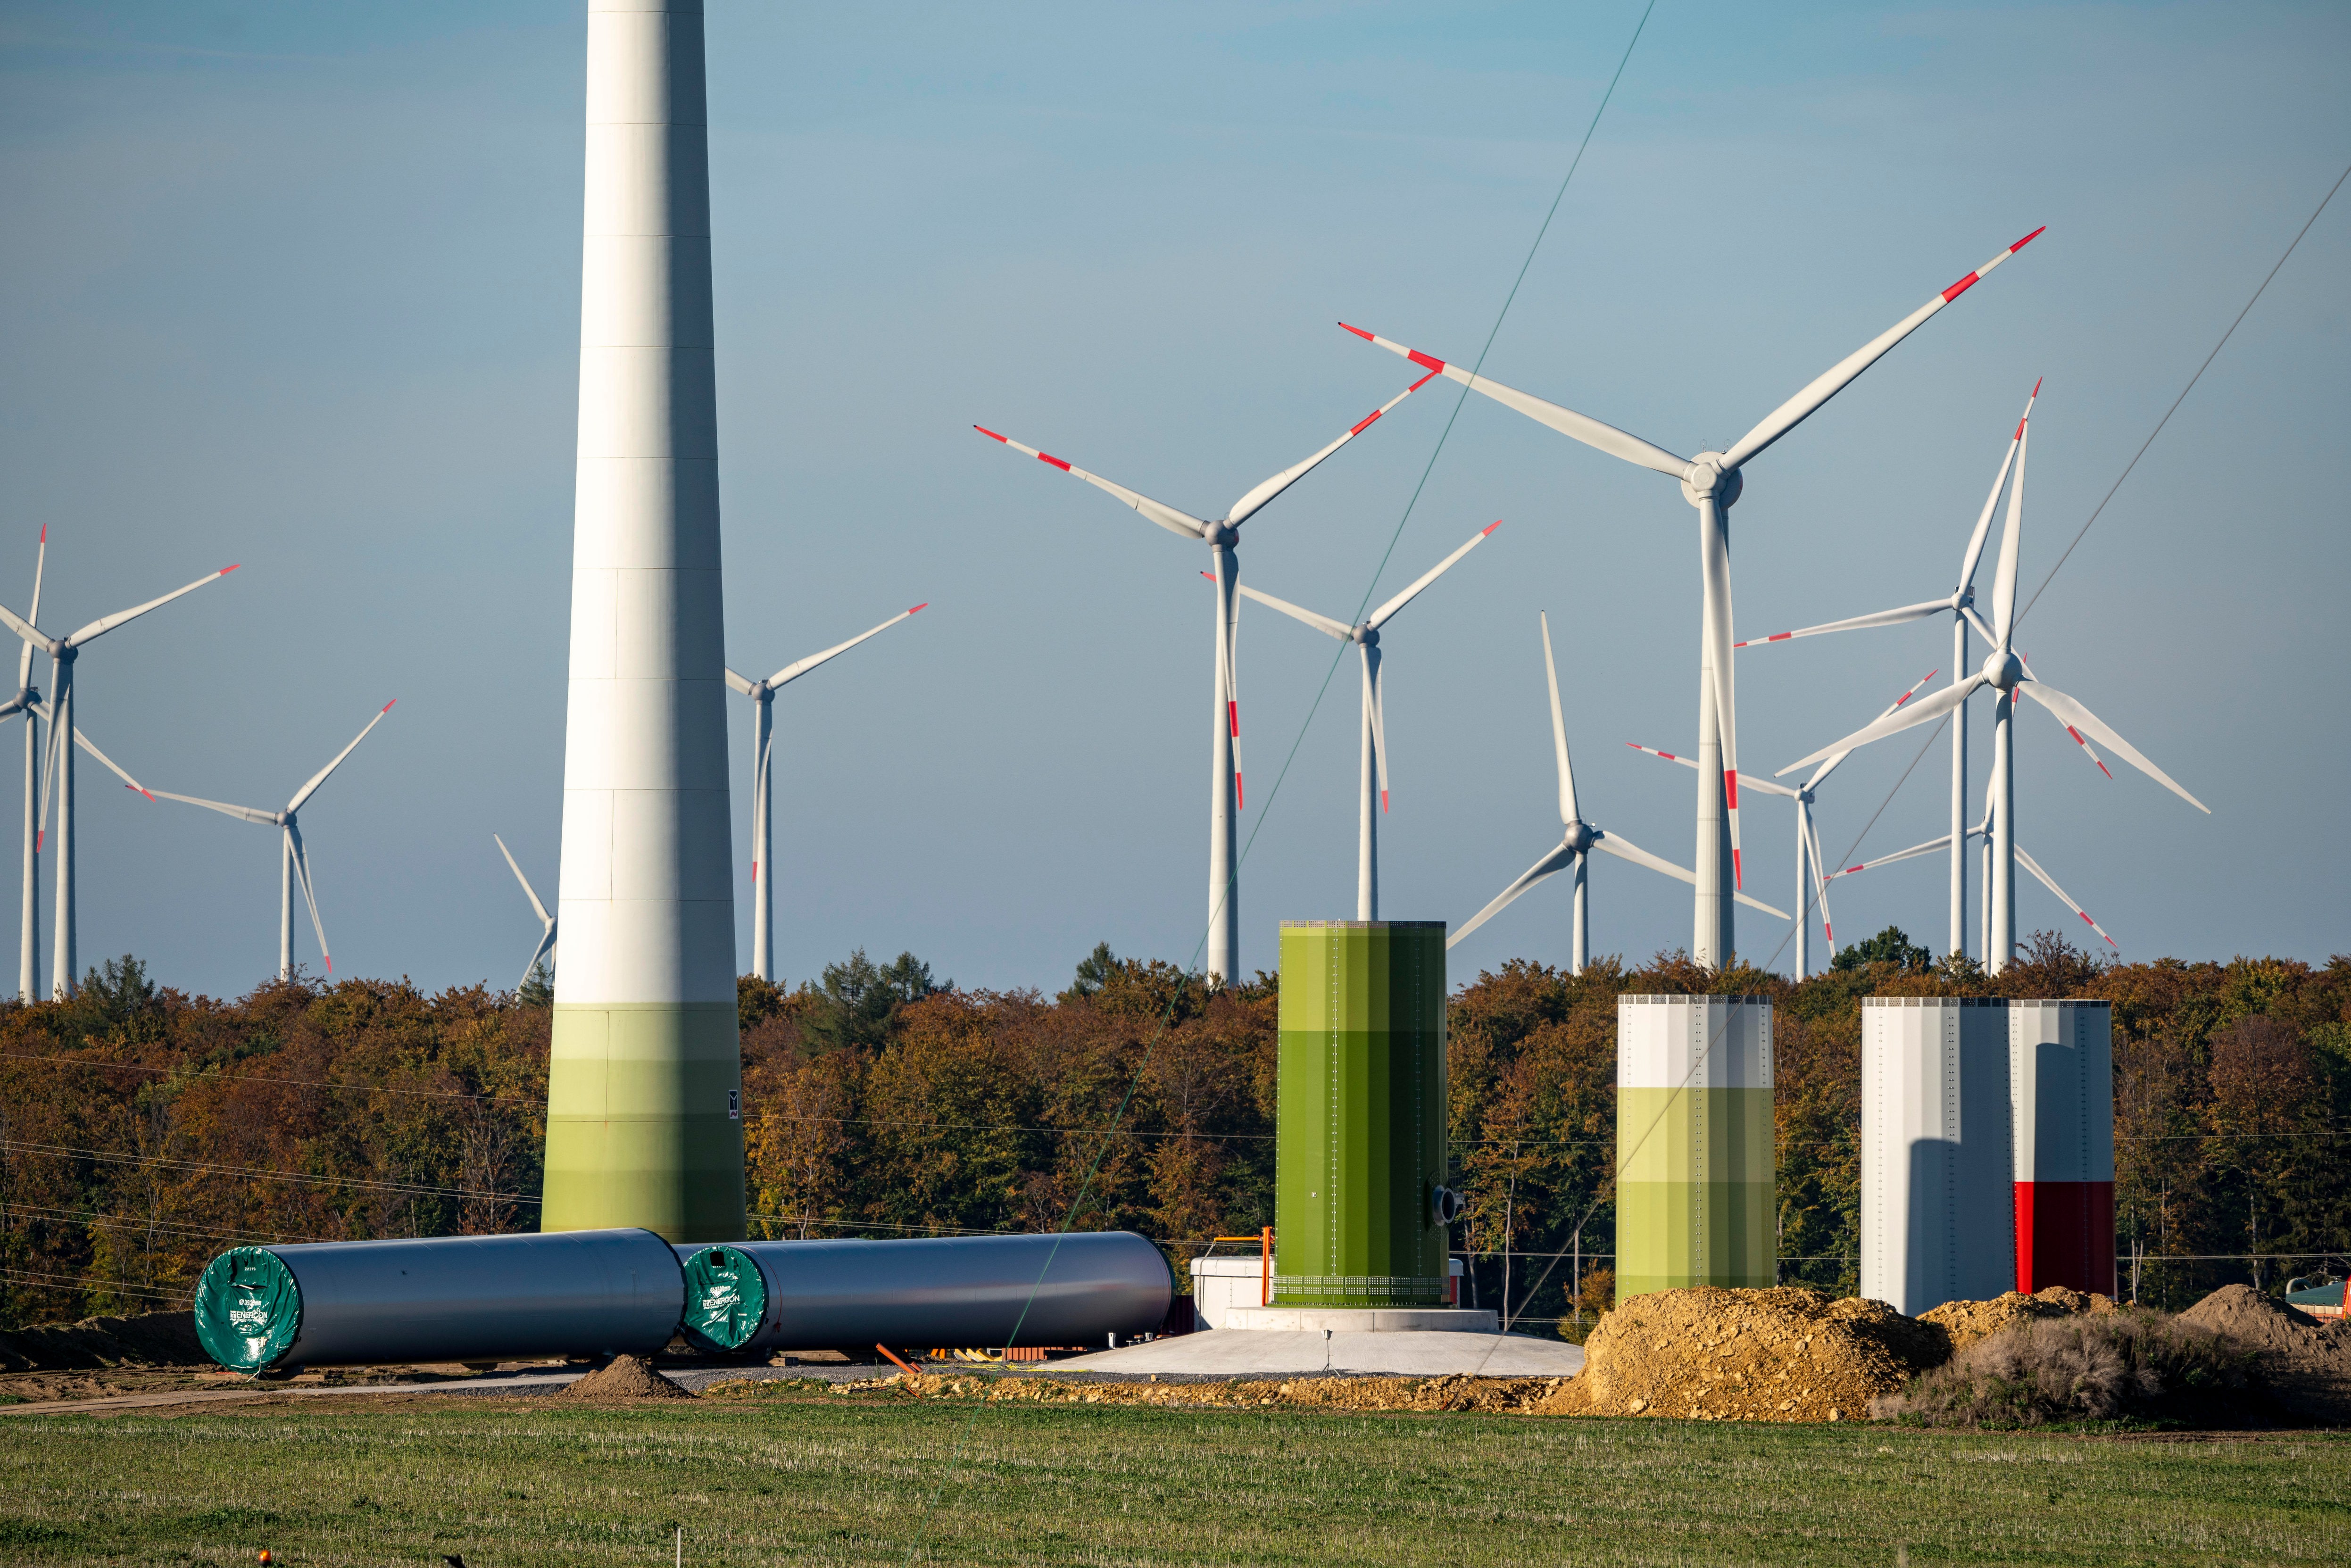 Ausbau der Windenergie - Bundeskabinett billigt beschleunigte Verfahren